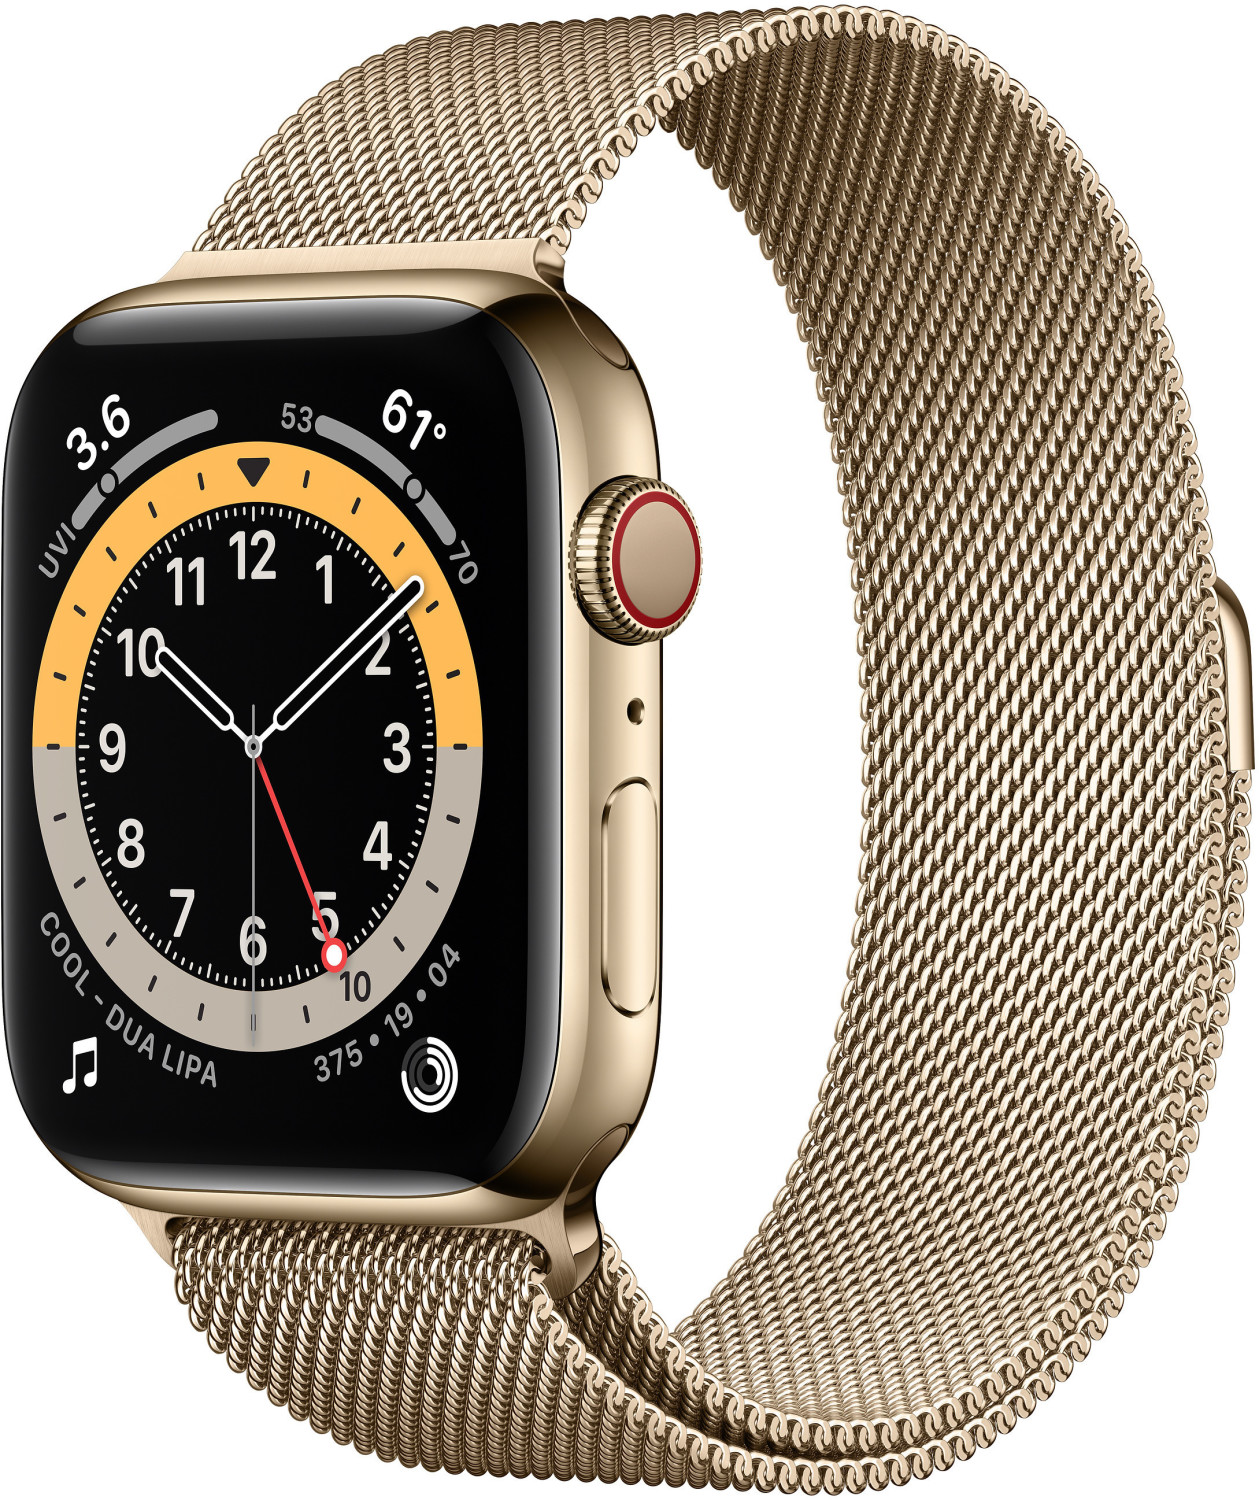 Apple Watch Series 6 Cellular 40 mm acero inoxidable dorado correa milanesa Loop desde 679,00